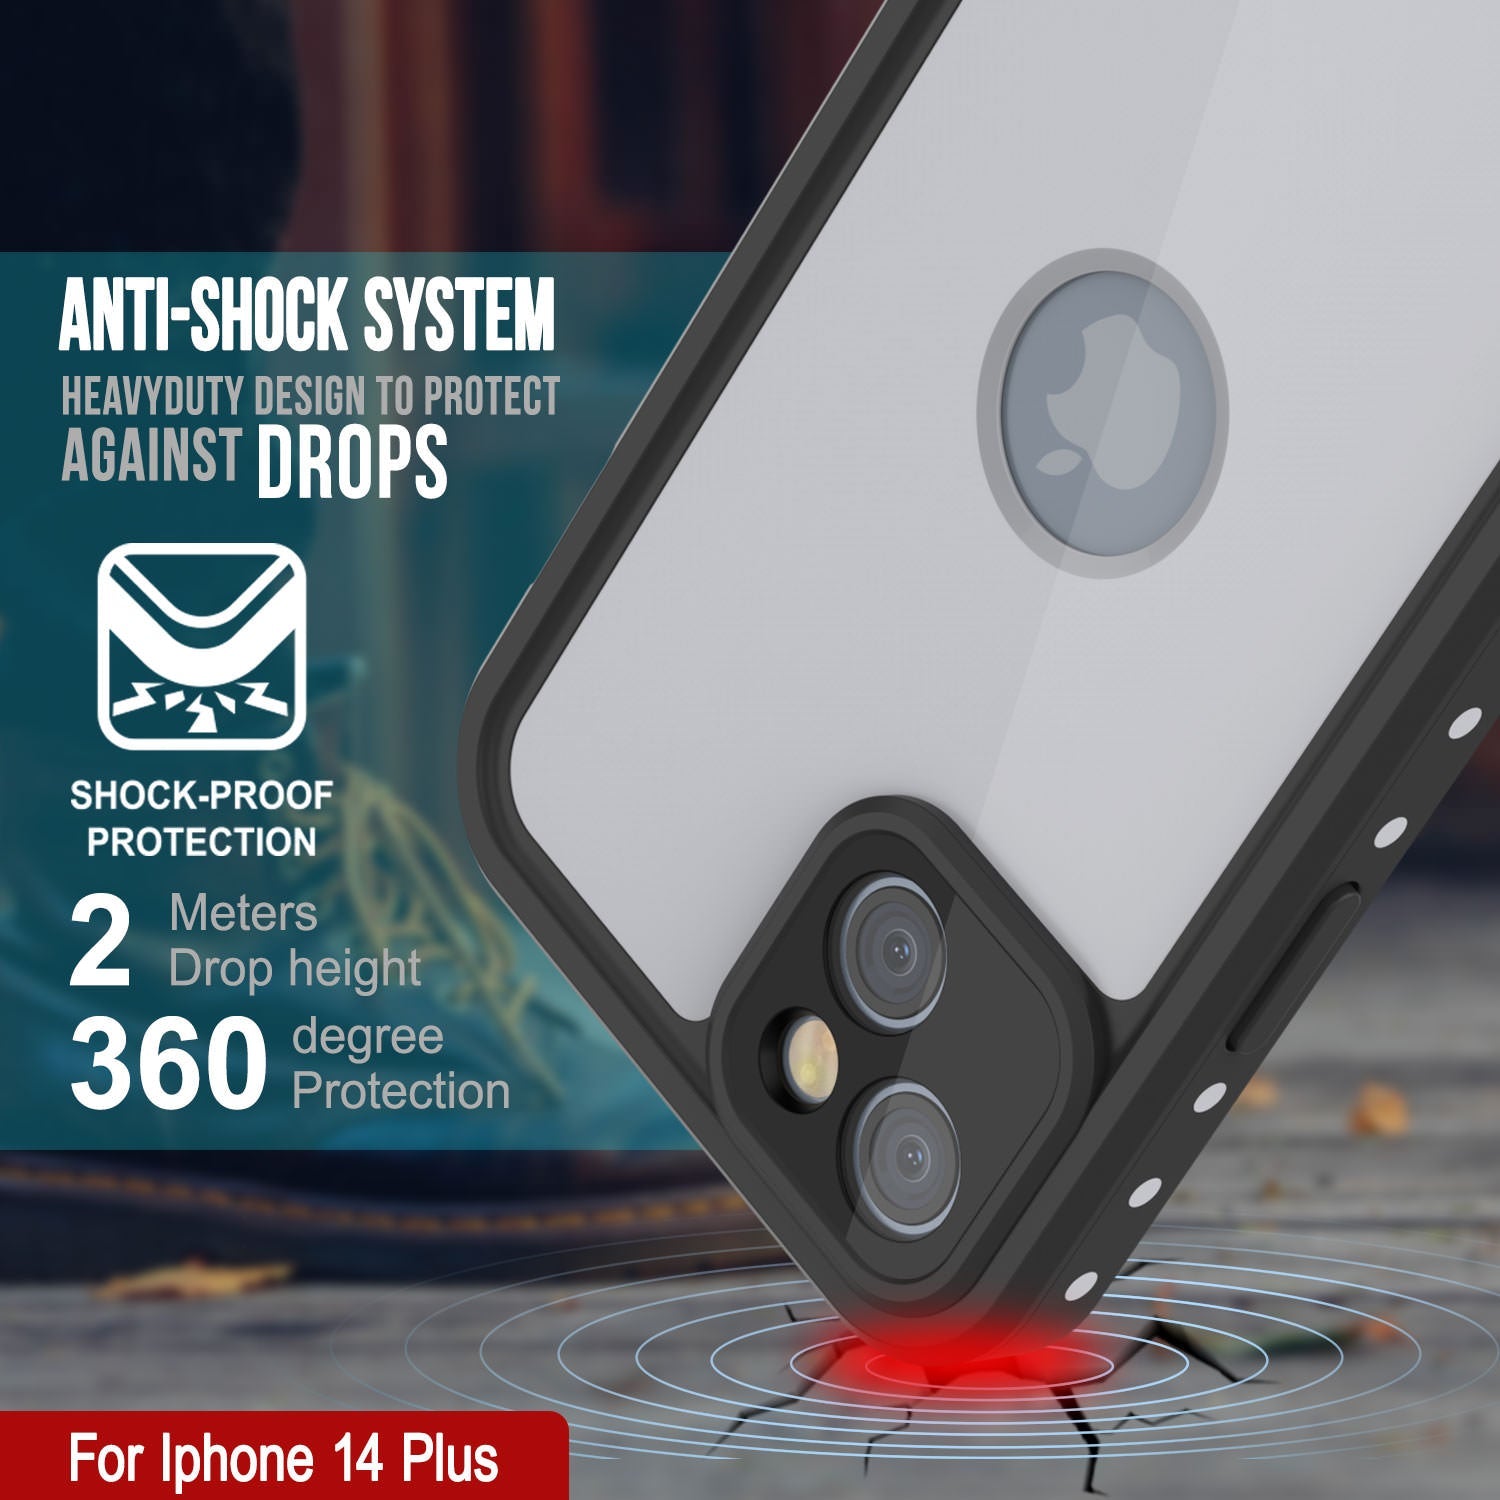 iPhone 14 Plus Waterproof IP68 Case, Punkcase [White] [StudStar Series] [Slim Fit] [Dirtproof]